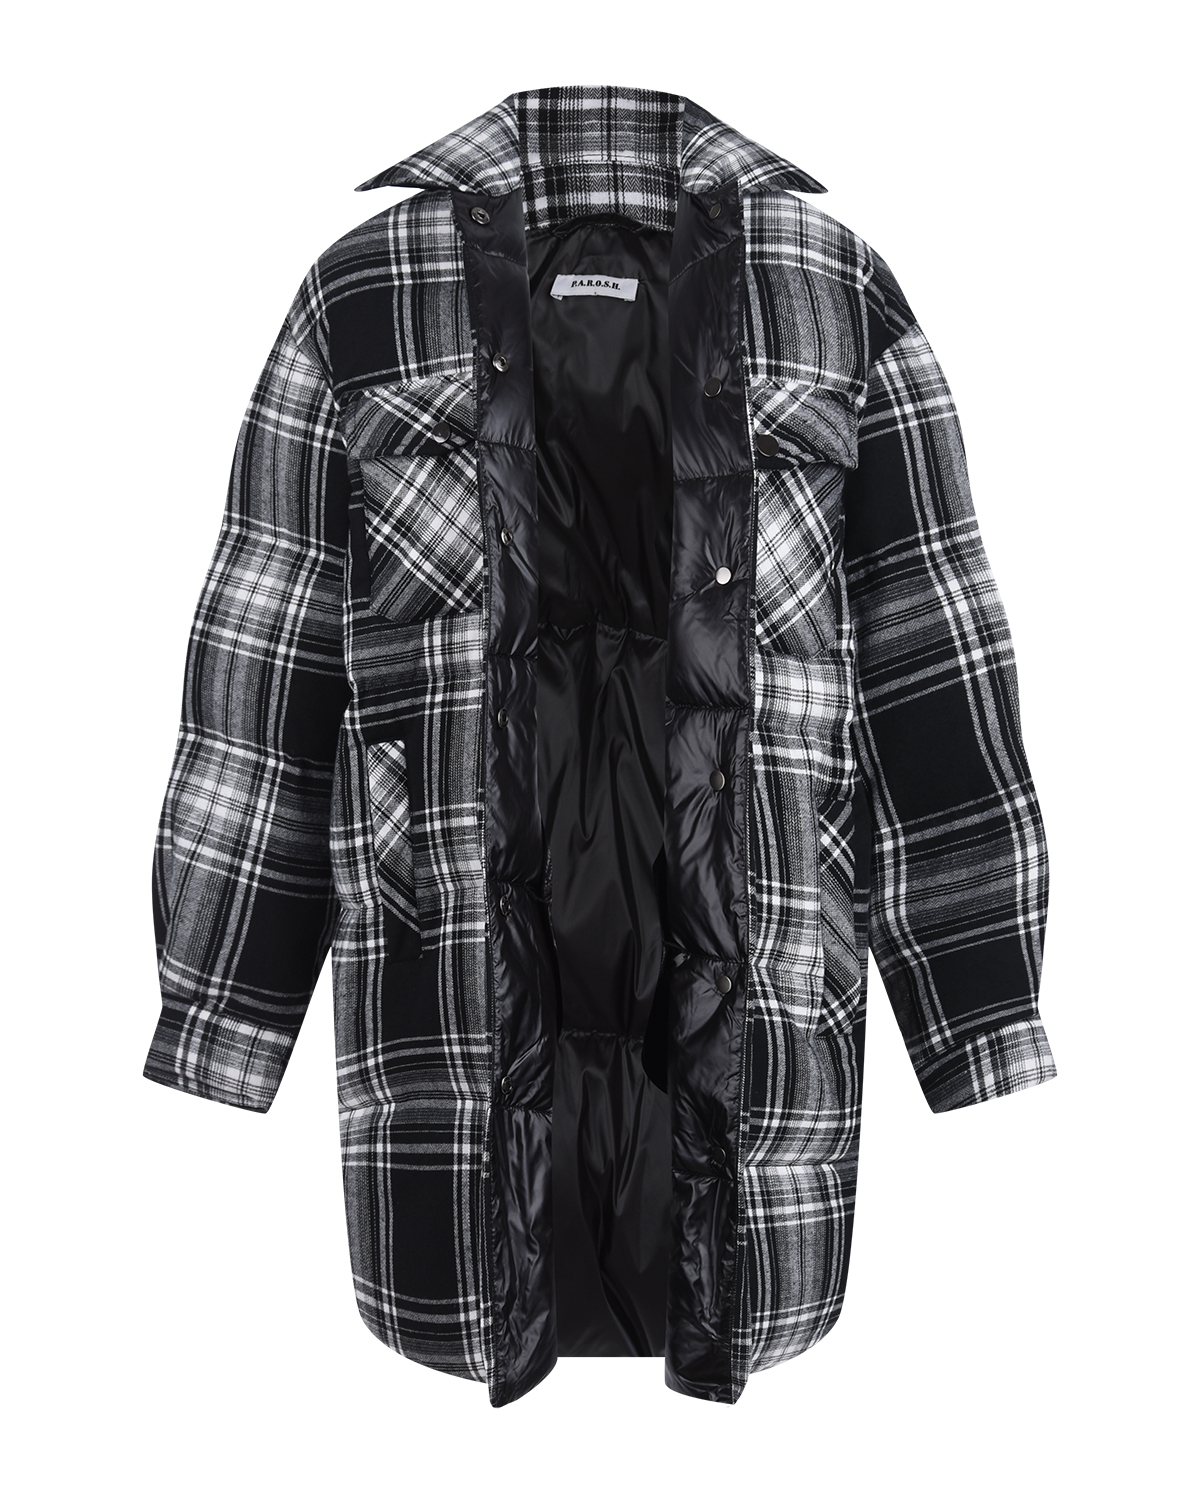 Пальто имитирующее рубашку в клетку Parosh, размер 42, цвет черный - фото 6